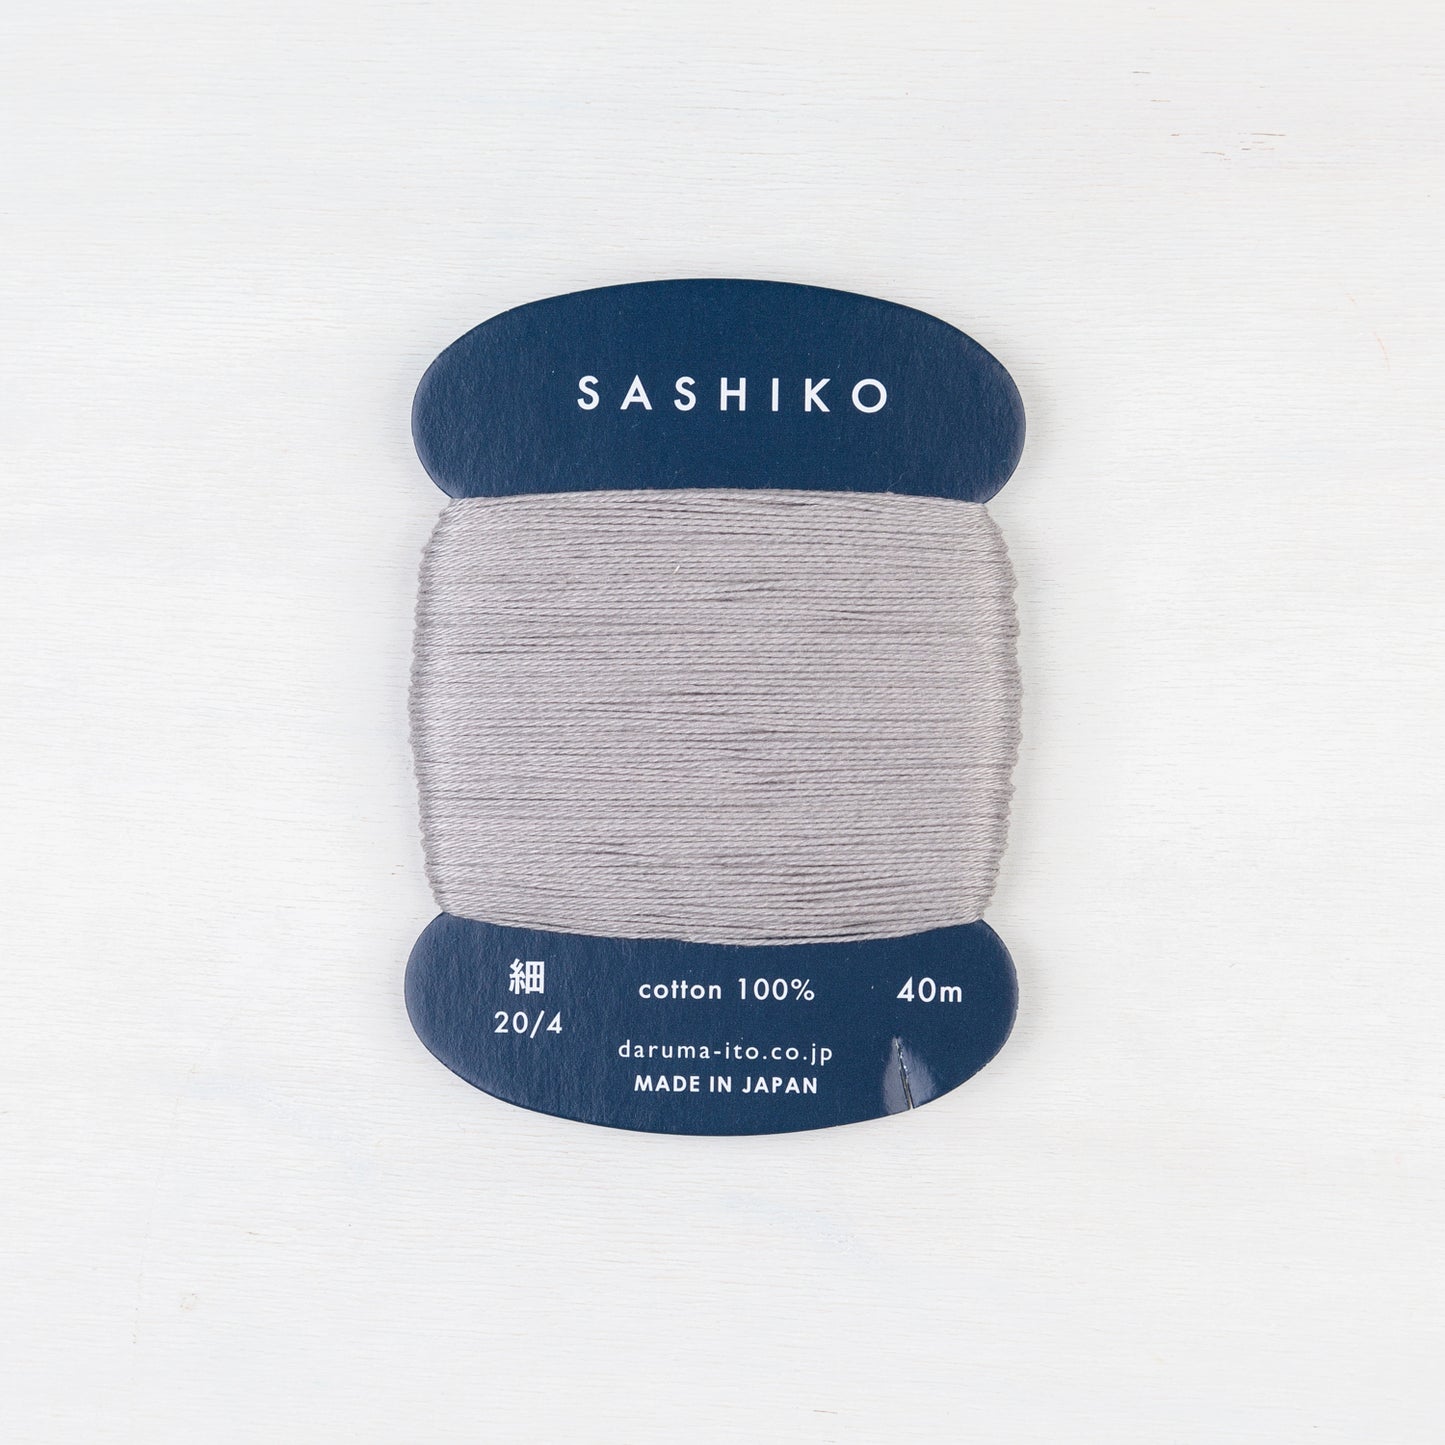 Thin Daruma Sashiko Thread Card